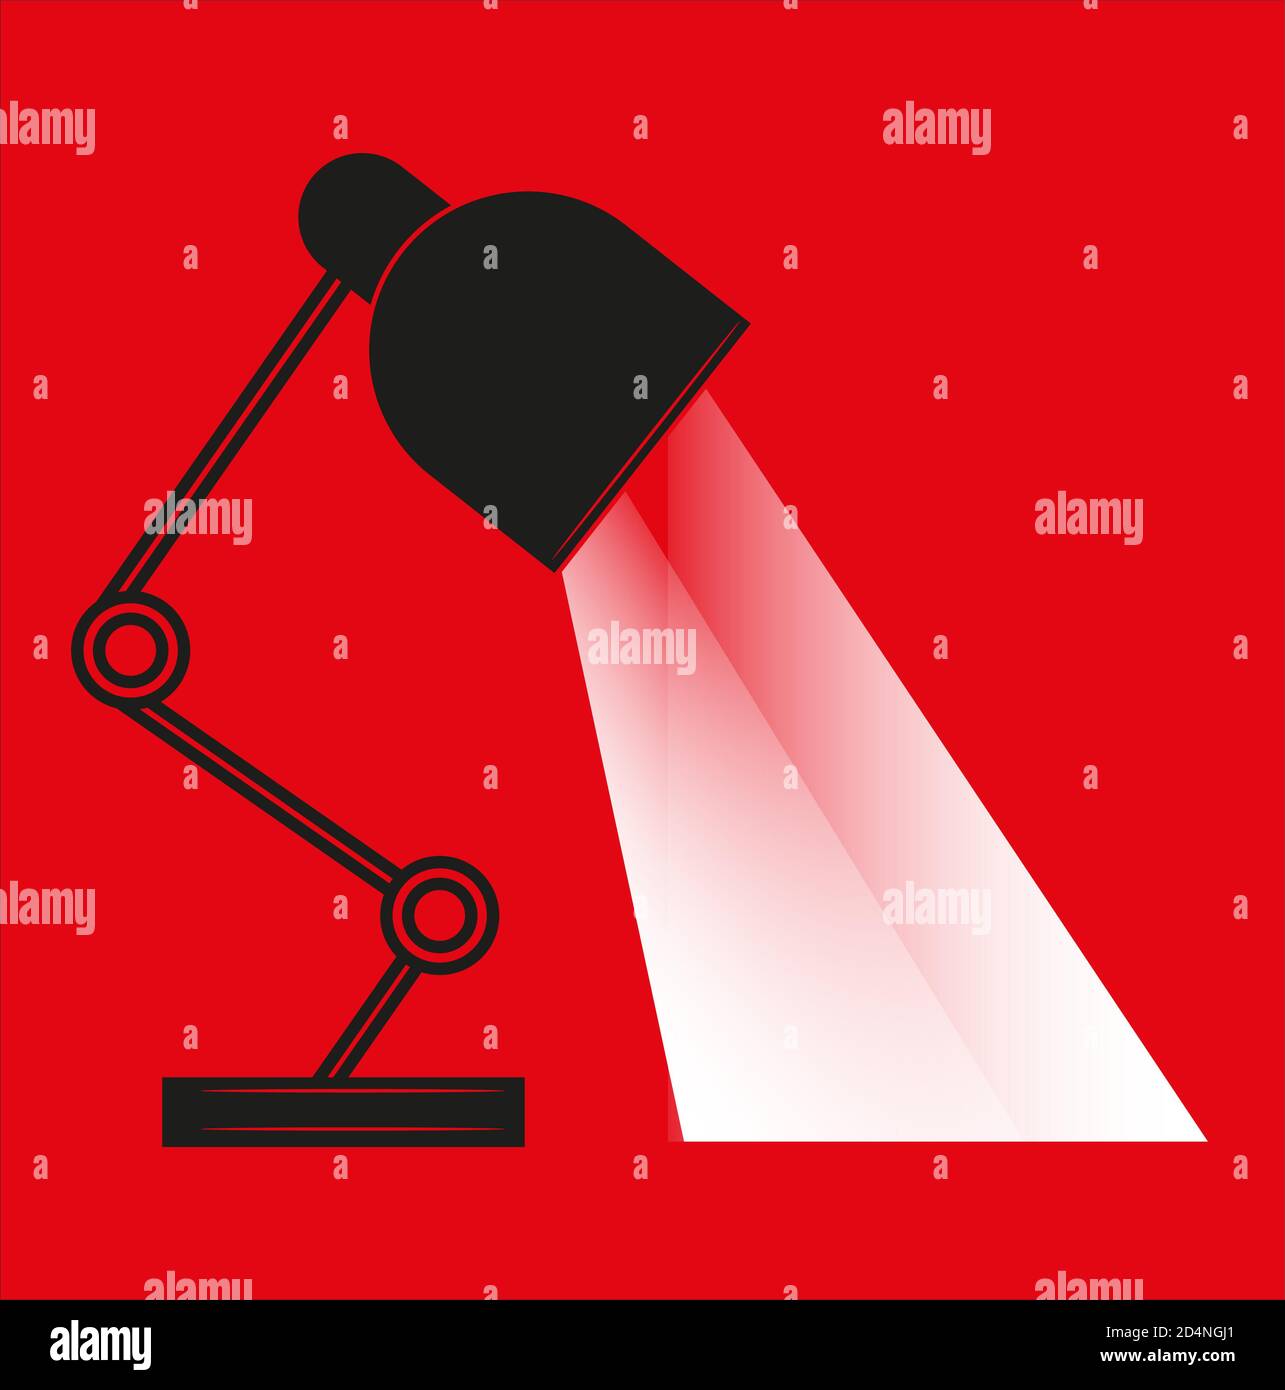 Tischleuchte Vektor-Illustration flache Design mit Wellen von Licht- isoliert auf einem roten Hintergrund. Stock Vektor